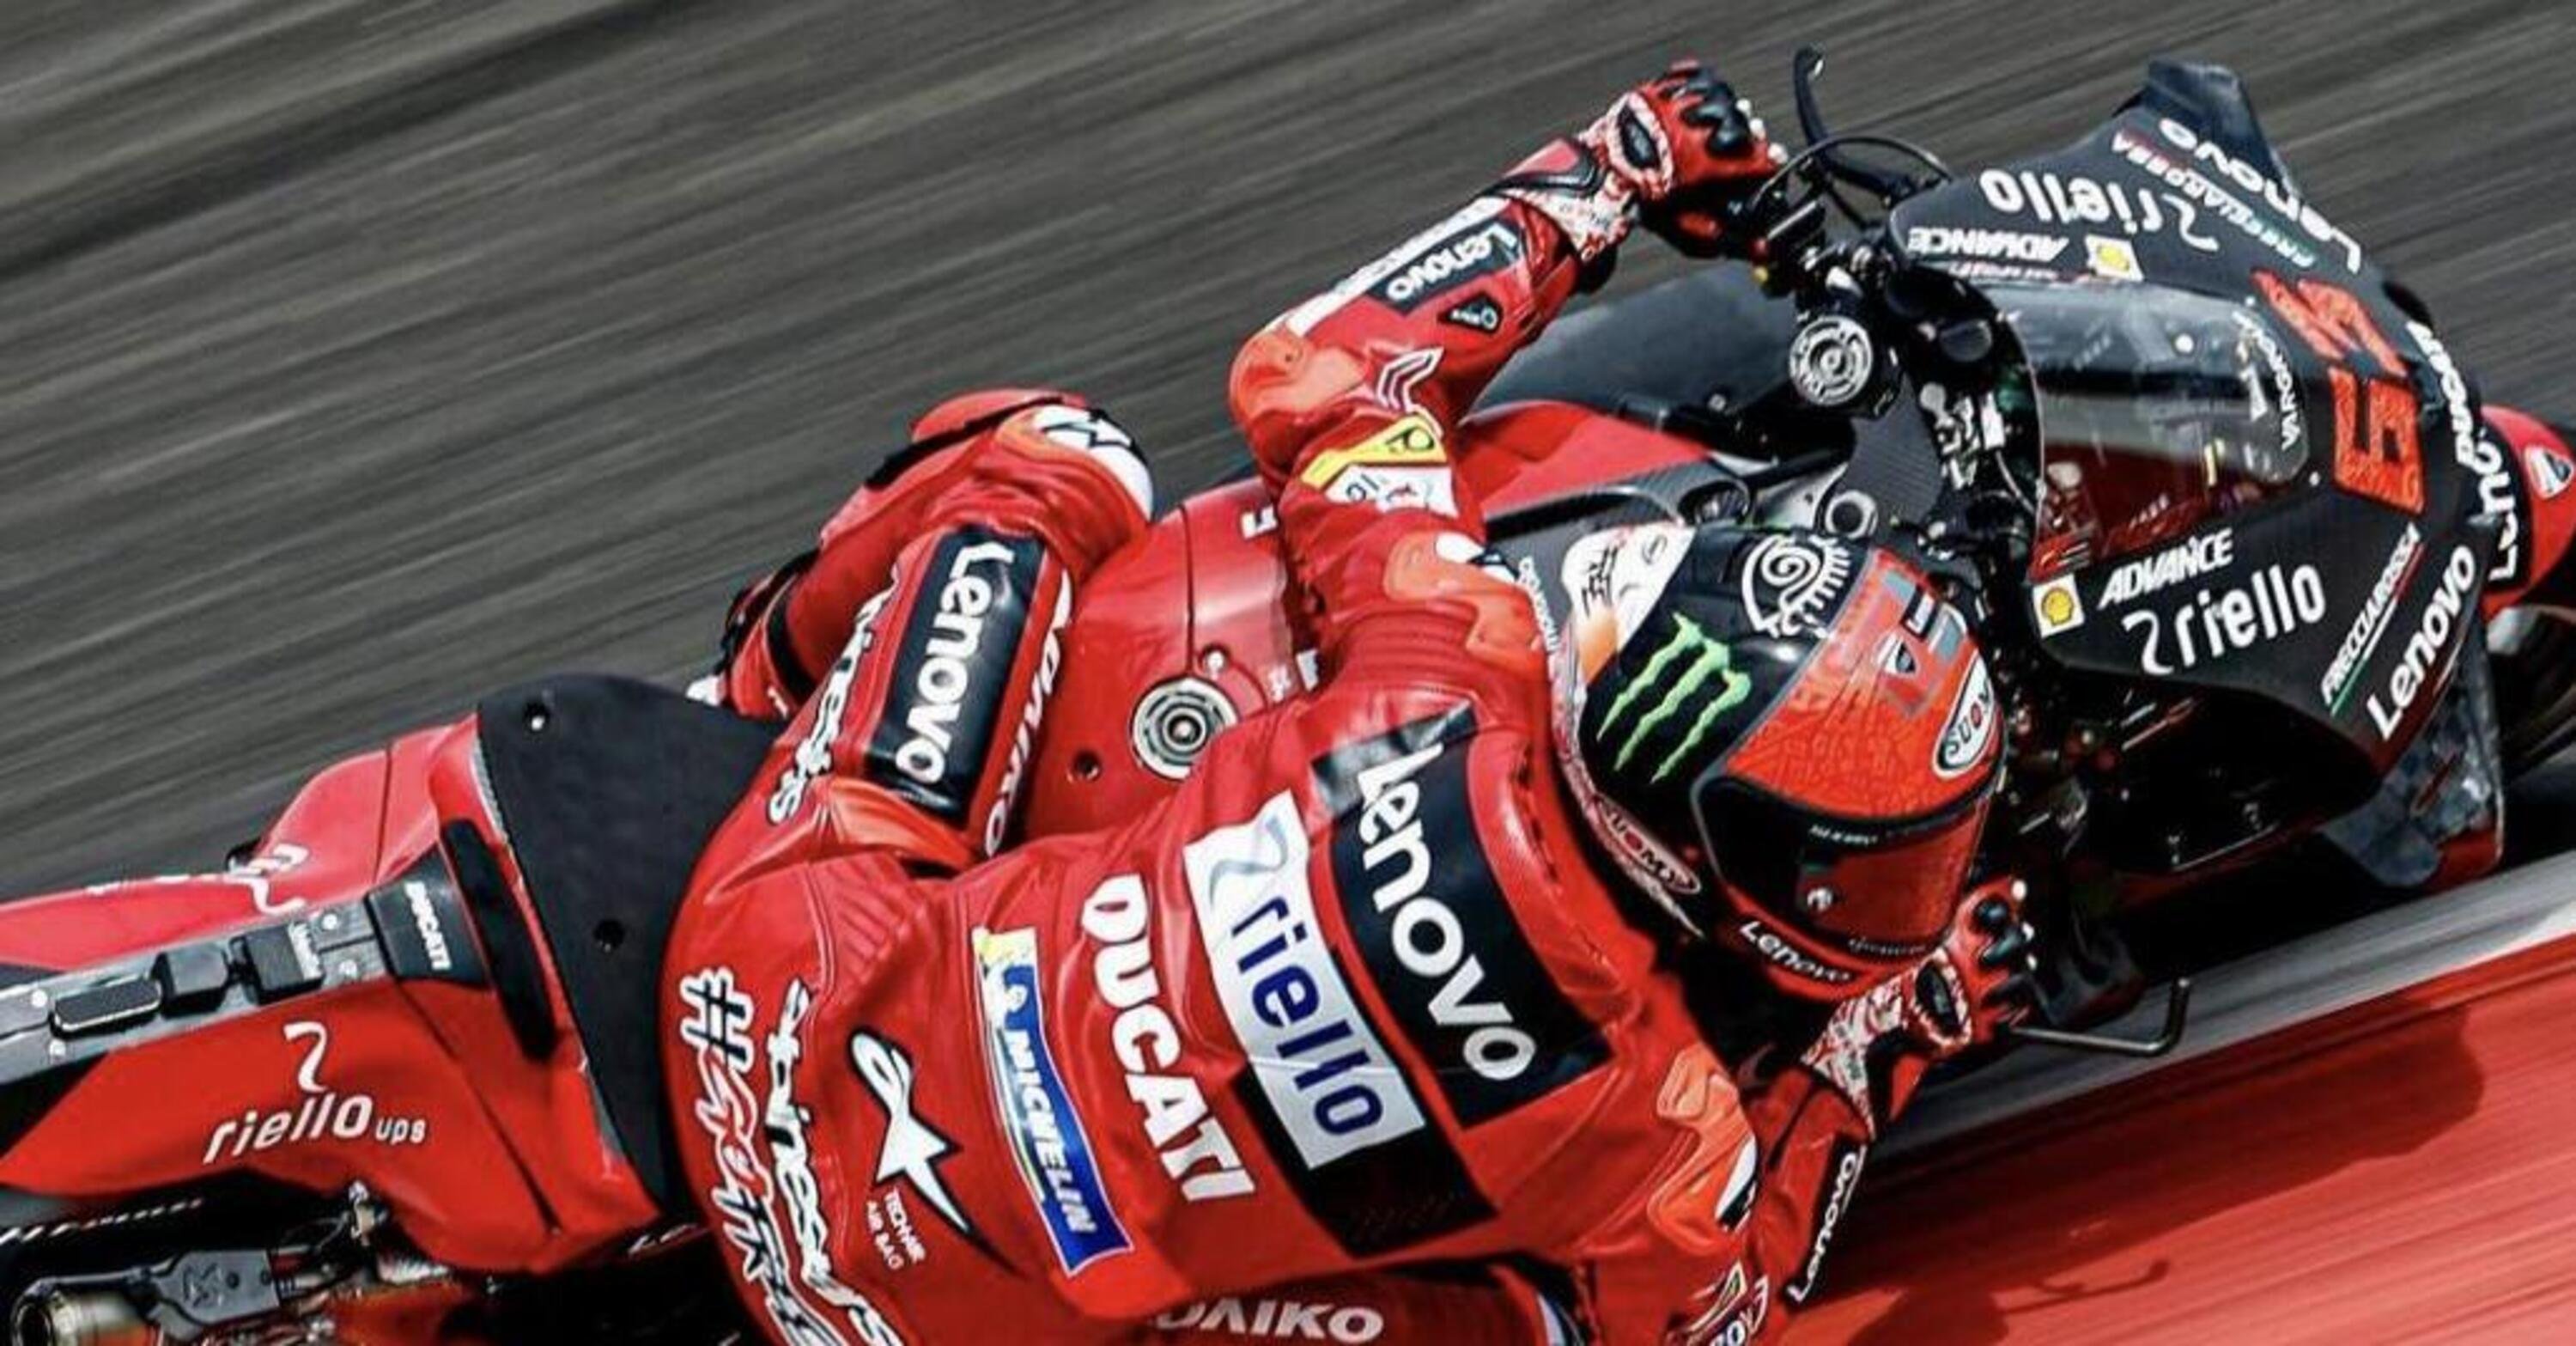 MotoGP 2022, test Mandalika, Day 2. Pecco Bagnaia: &ldquo;Con Ducati sto benissimo, presto il rinnovo&rdquo;